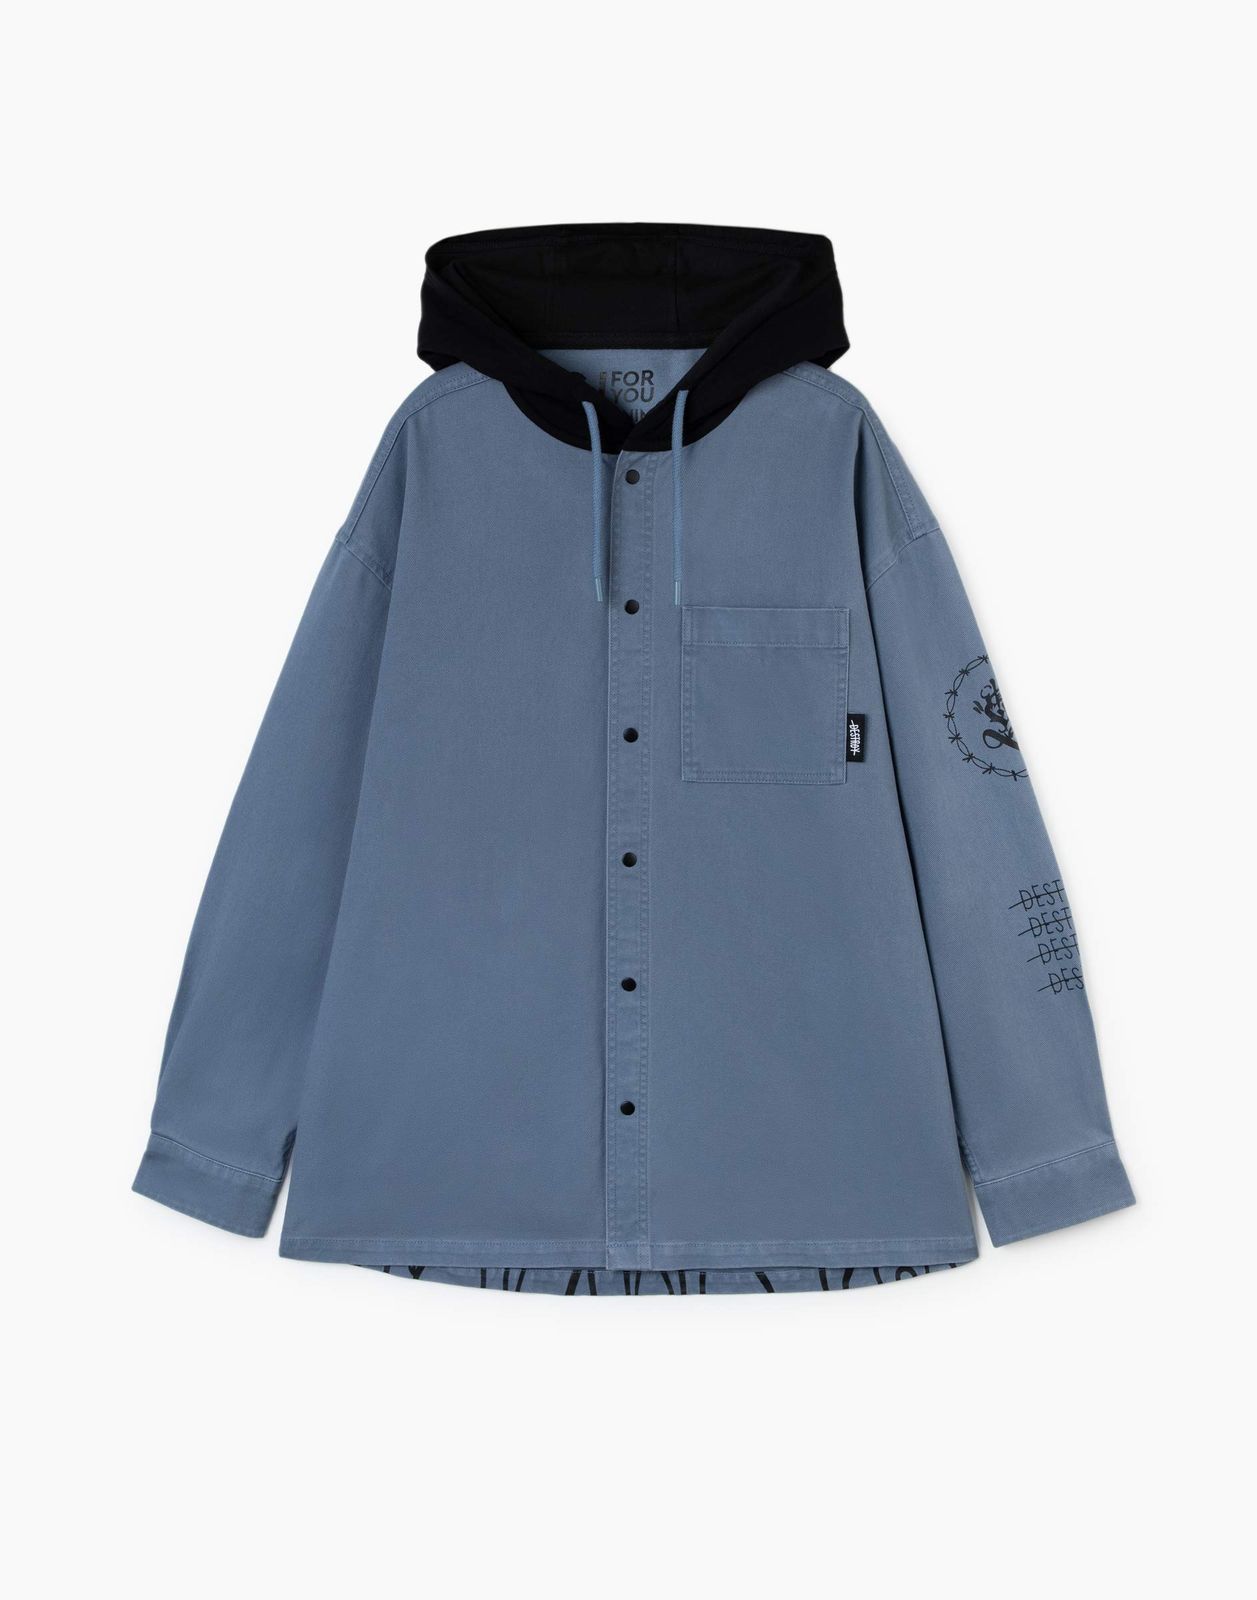 Джинсовый жакет (куртка) Gloria Jeans BJC002489 синий/серый 14-16л/176 для мальчика